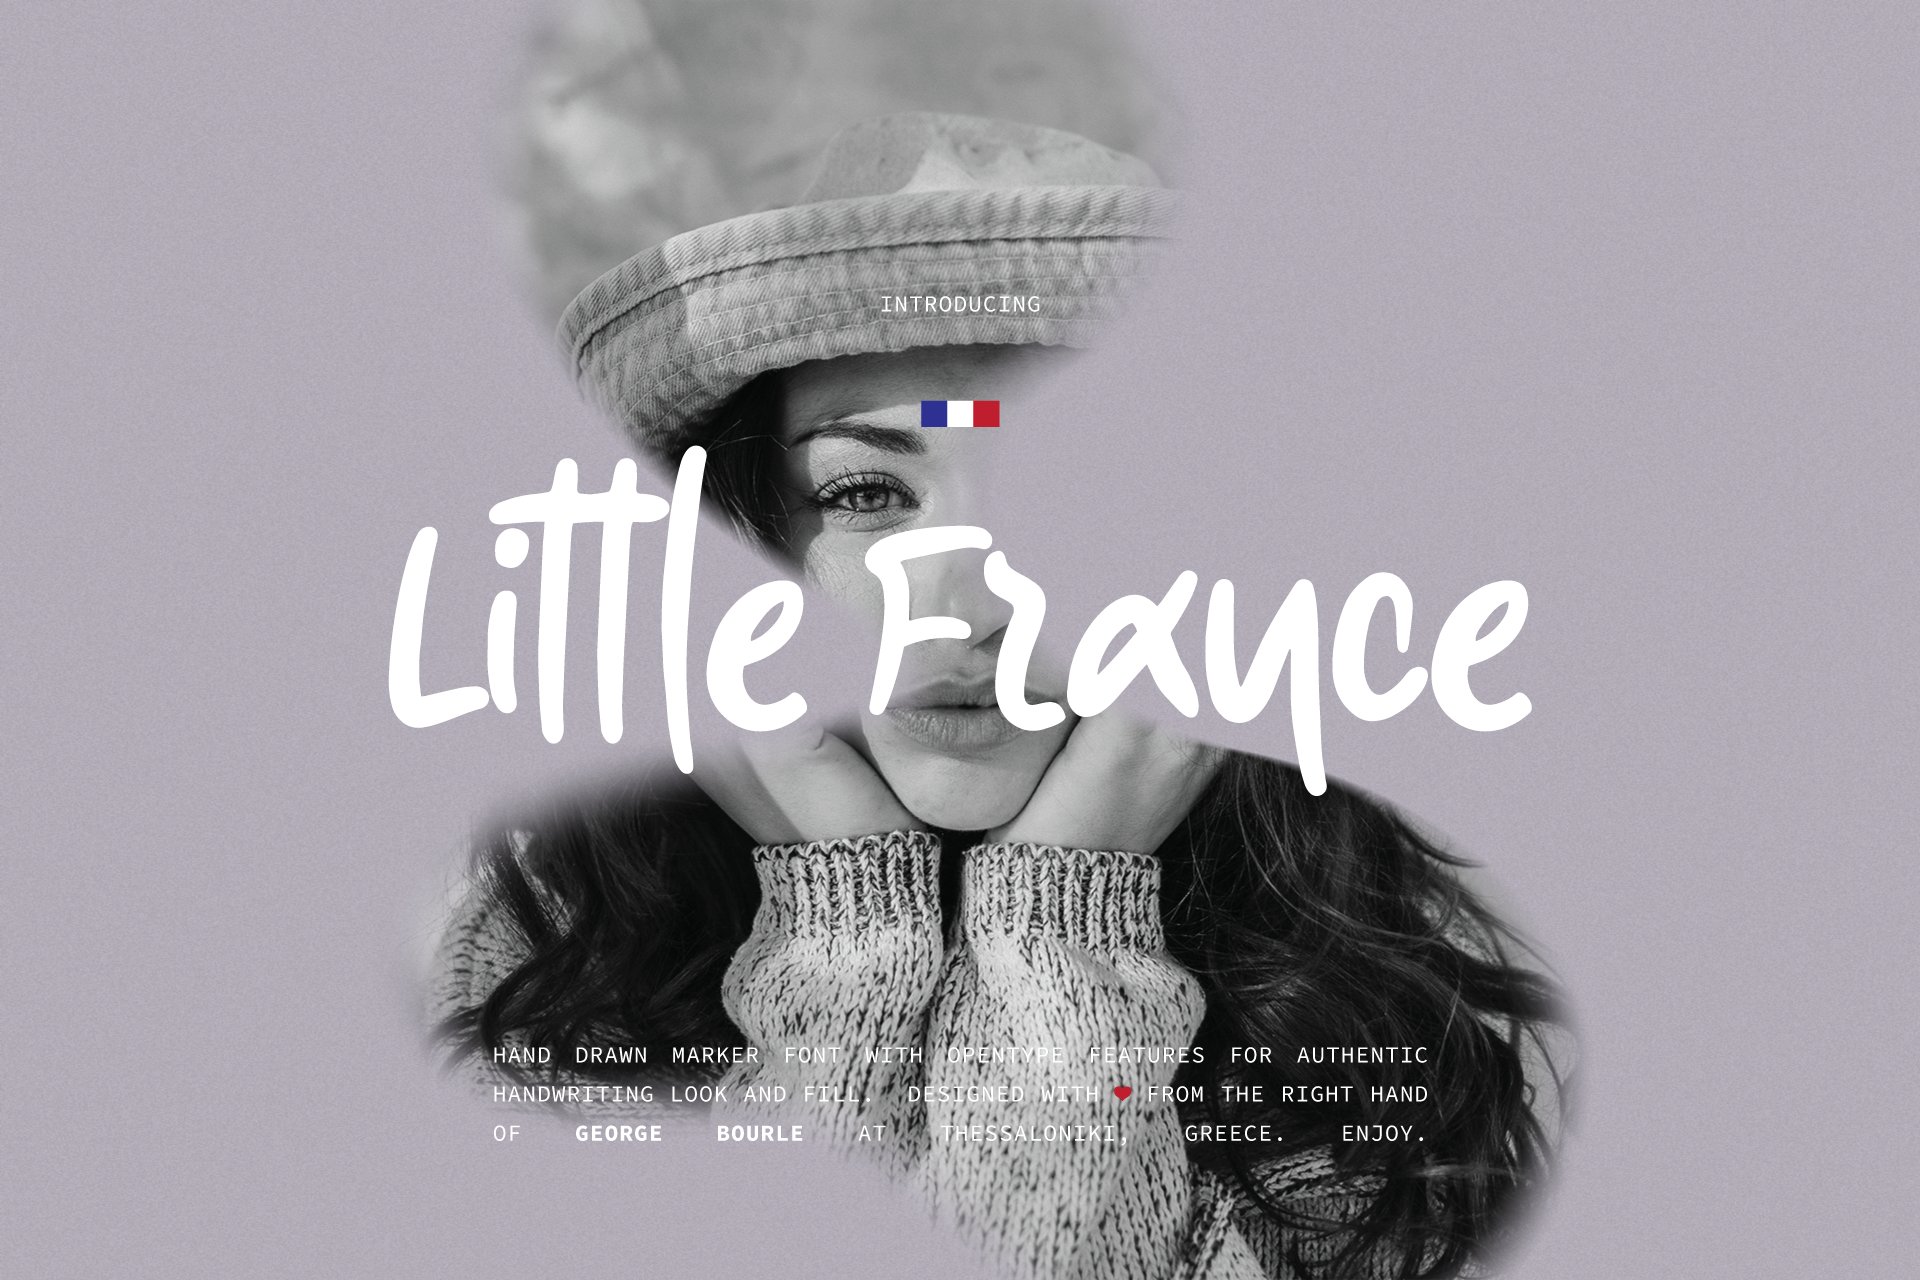 Little France marker fontcover image.